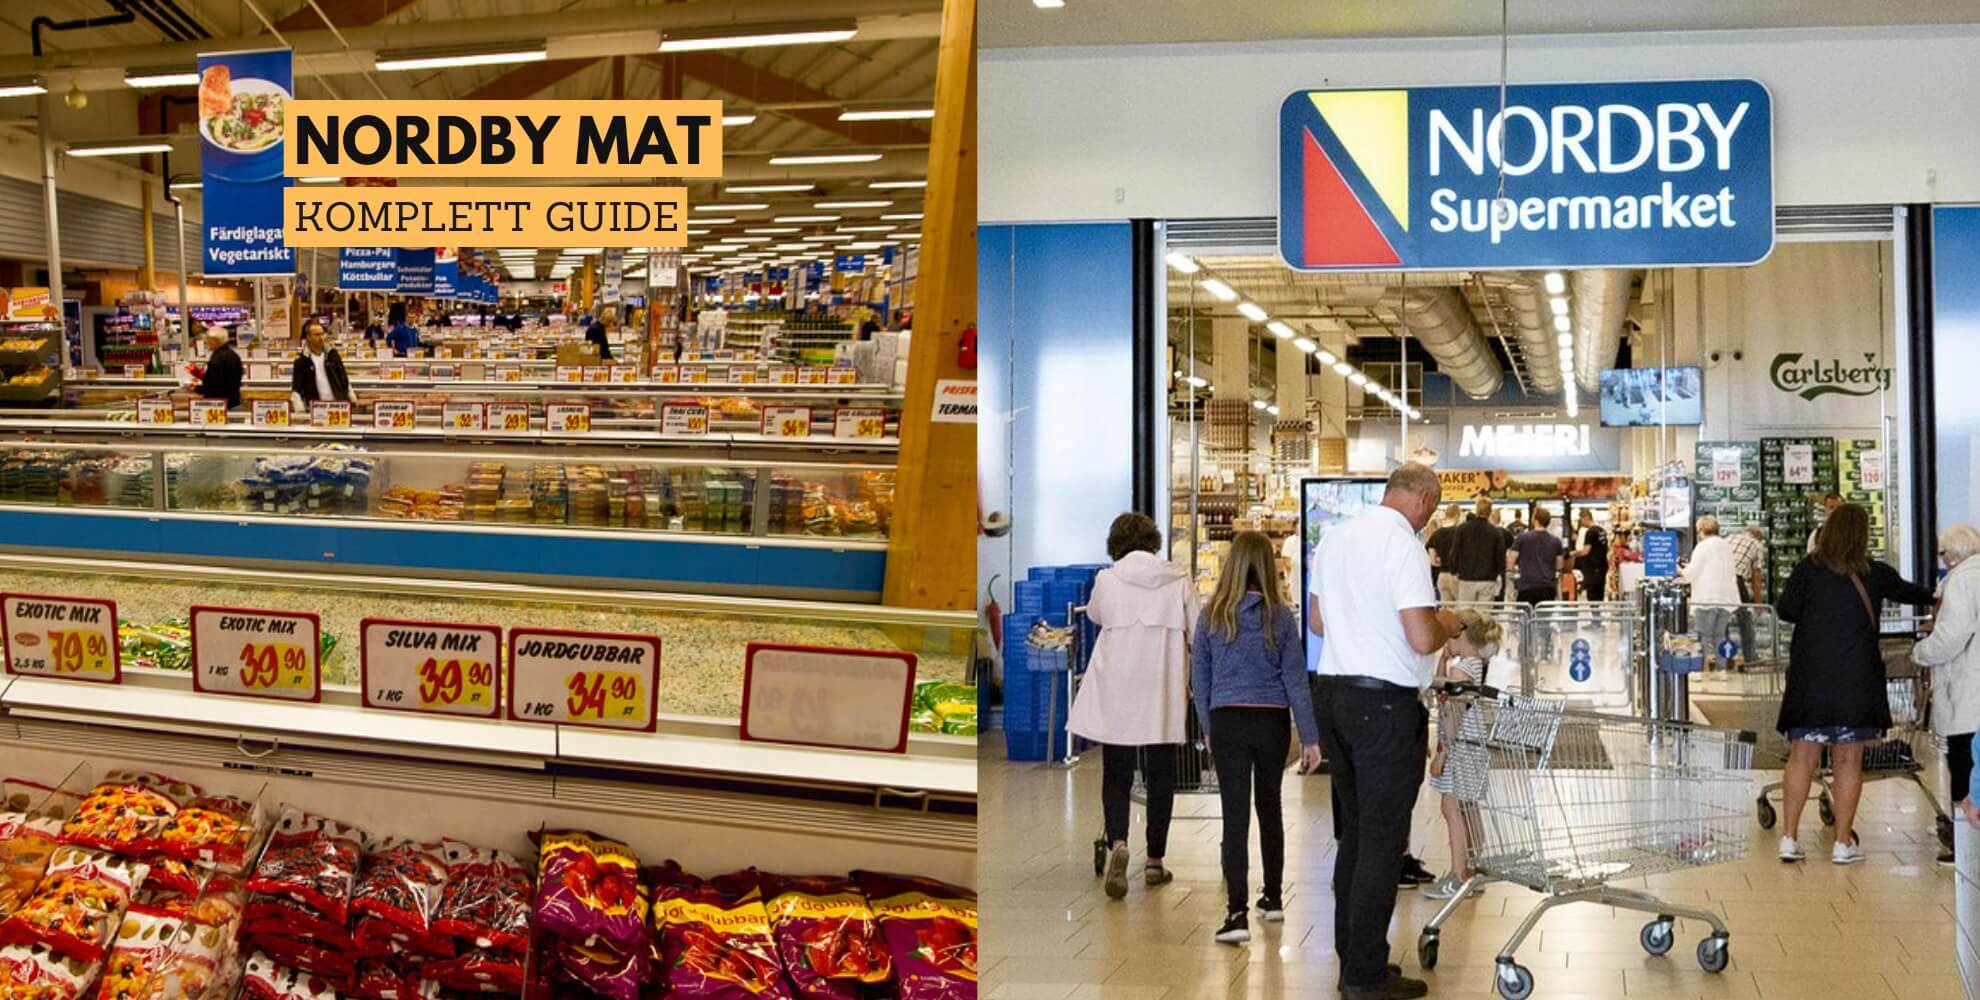 Bilde av Nordby kjøpesenter og matdisken deres, med tekst: nordby mat, komplett guide.